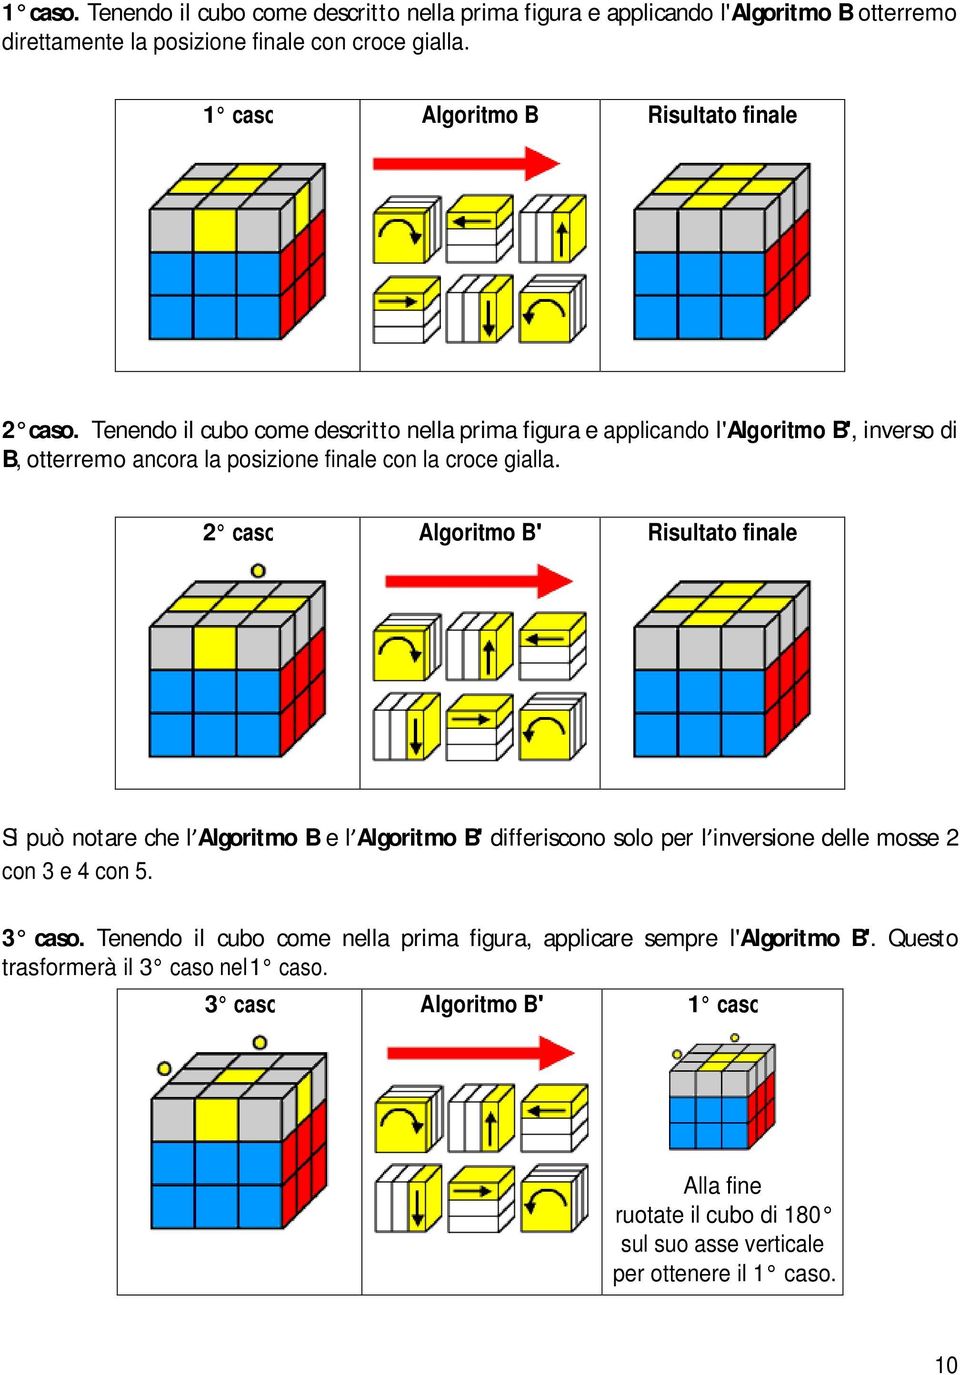 Tenendo il cubo come descritto nella prima figura e applicando l'algoritmo B, inverso di B, otterremo ancora la posizione finale con la croce gialla.